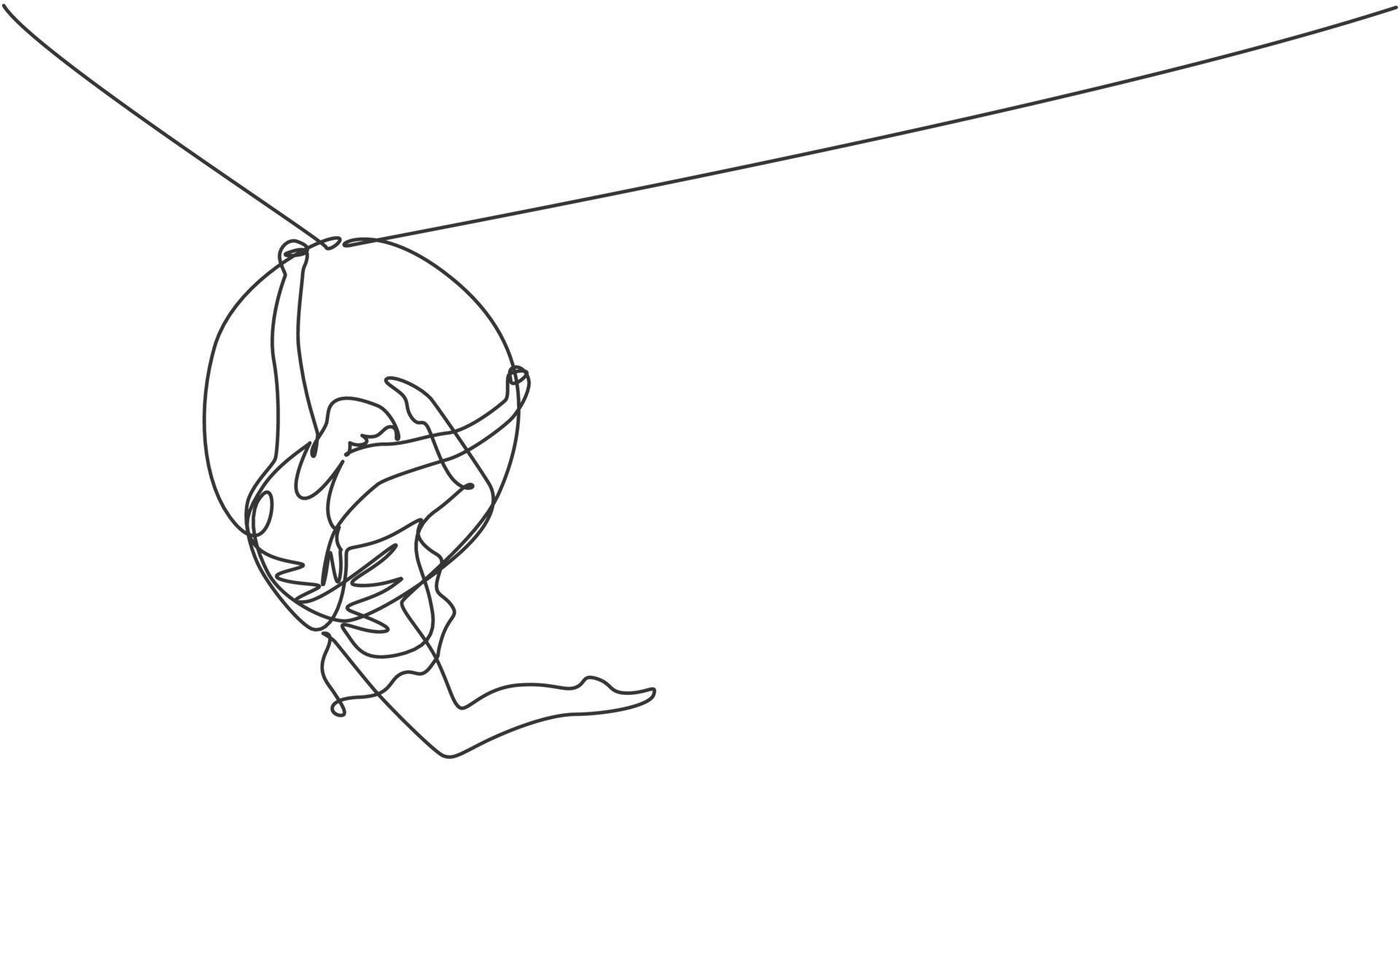 una línea continua dibujando una mujer acrobática que se presenta en un aro aéreo mientras baila y tiene una pierna levantada cerca de la parte posterior de la cabeza. Ilustración gráfica de vector de diseño de dibujo de una sola línea.